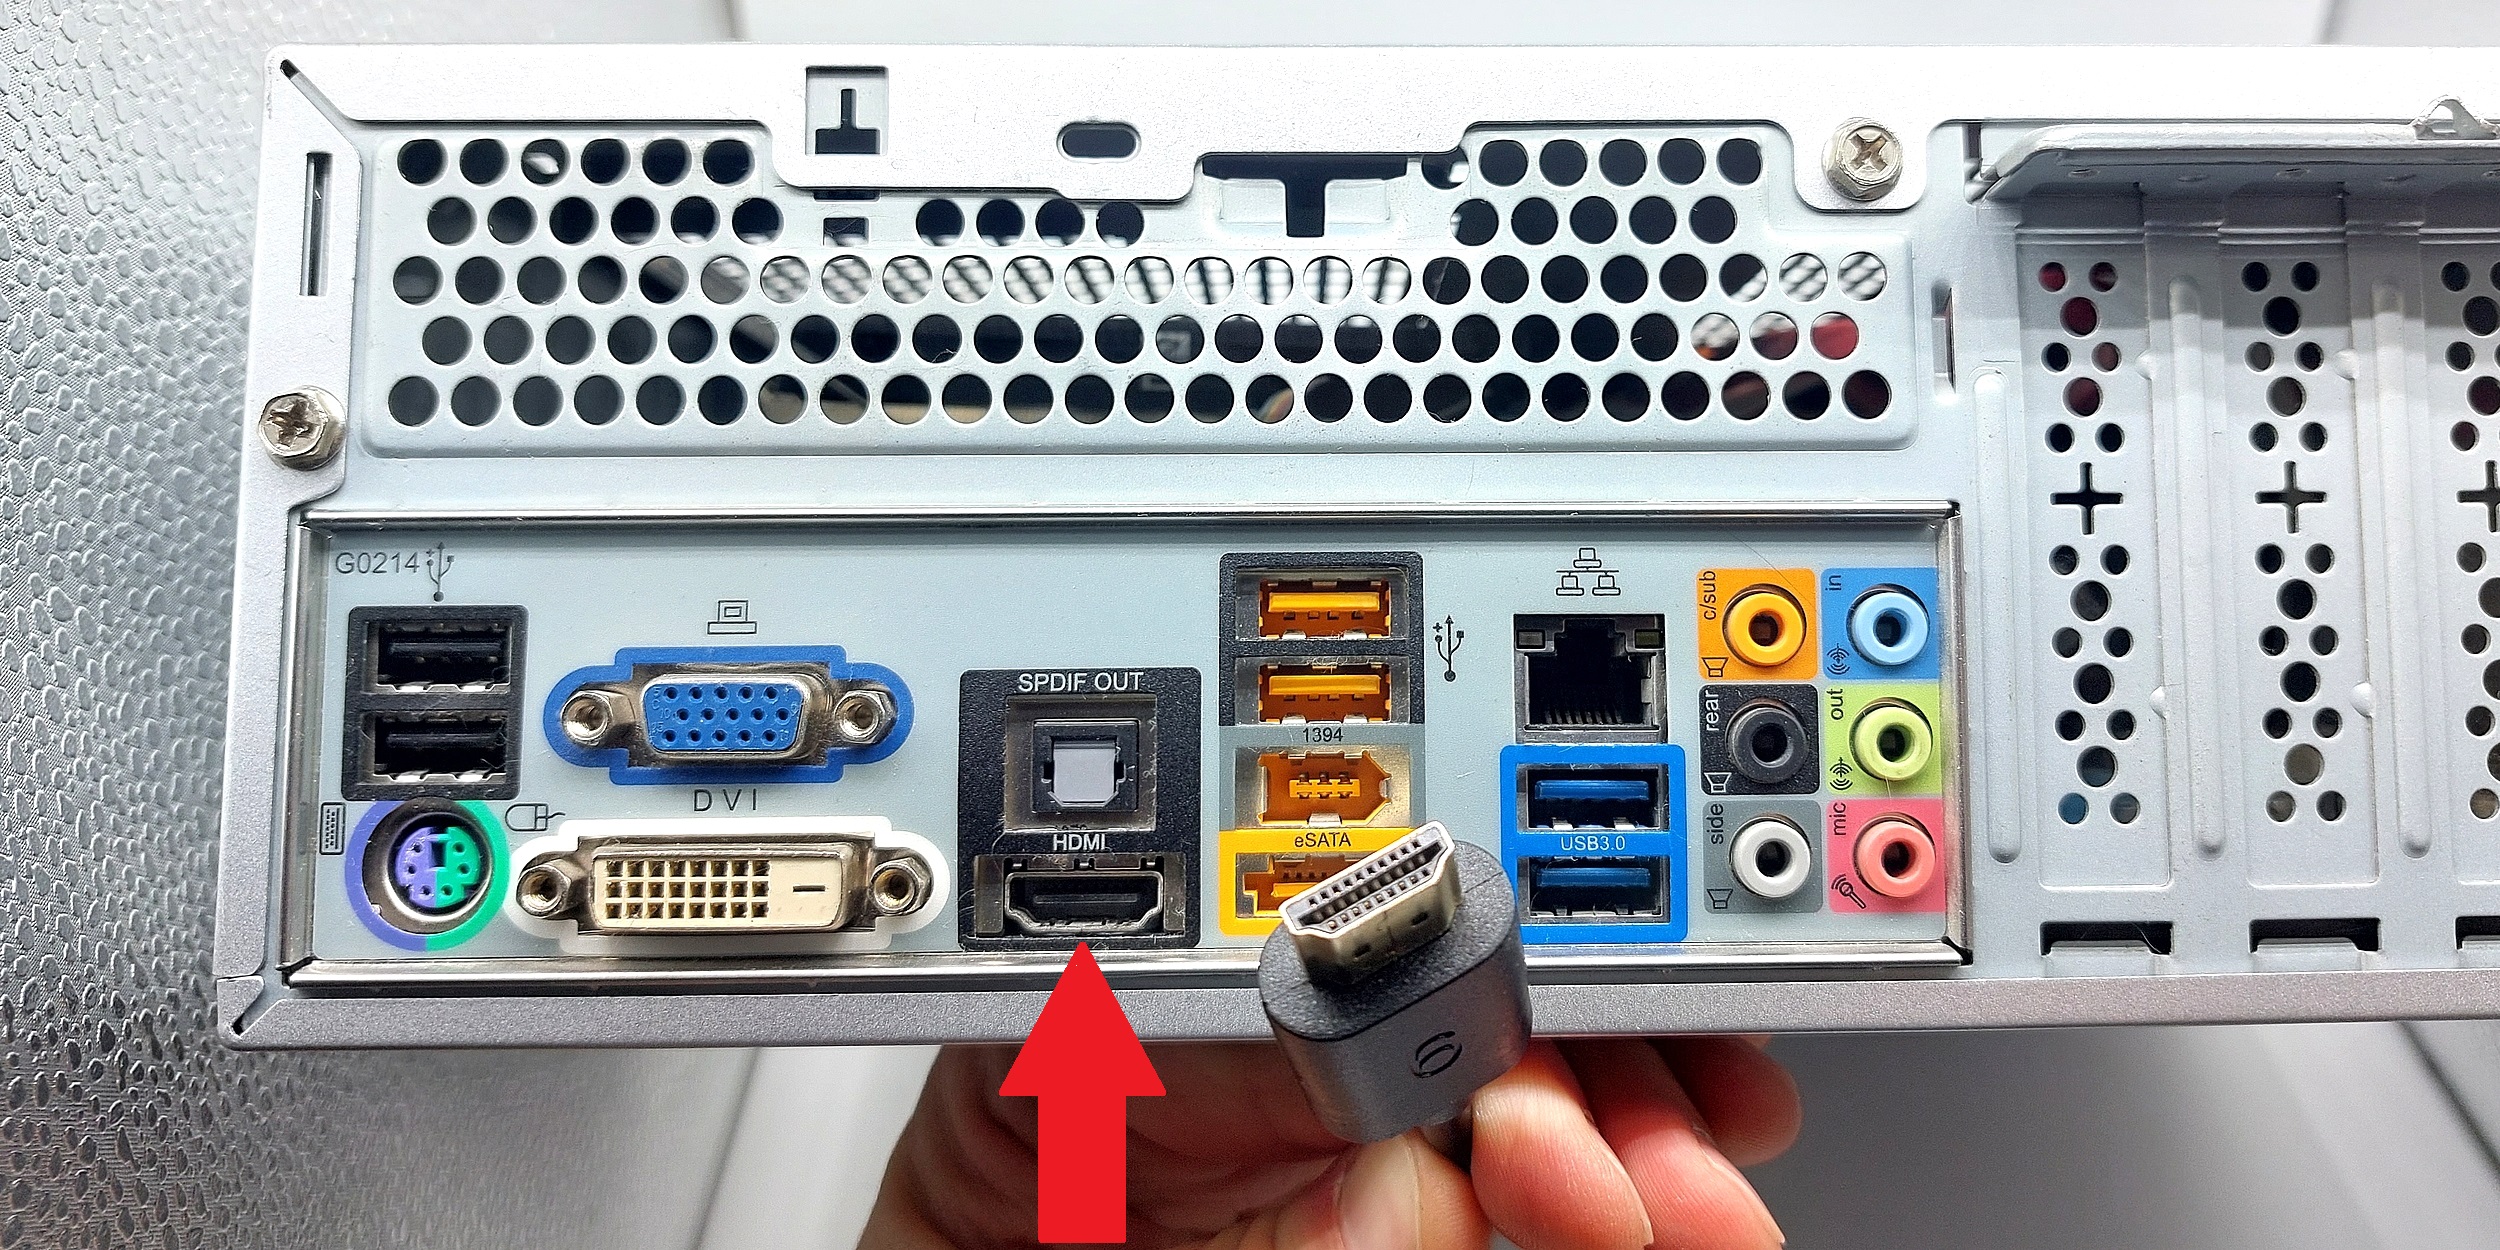 Можно ли своими руками сделать ремонт HDMI порта телевизора? - СЦ 